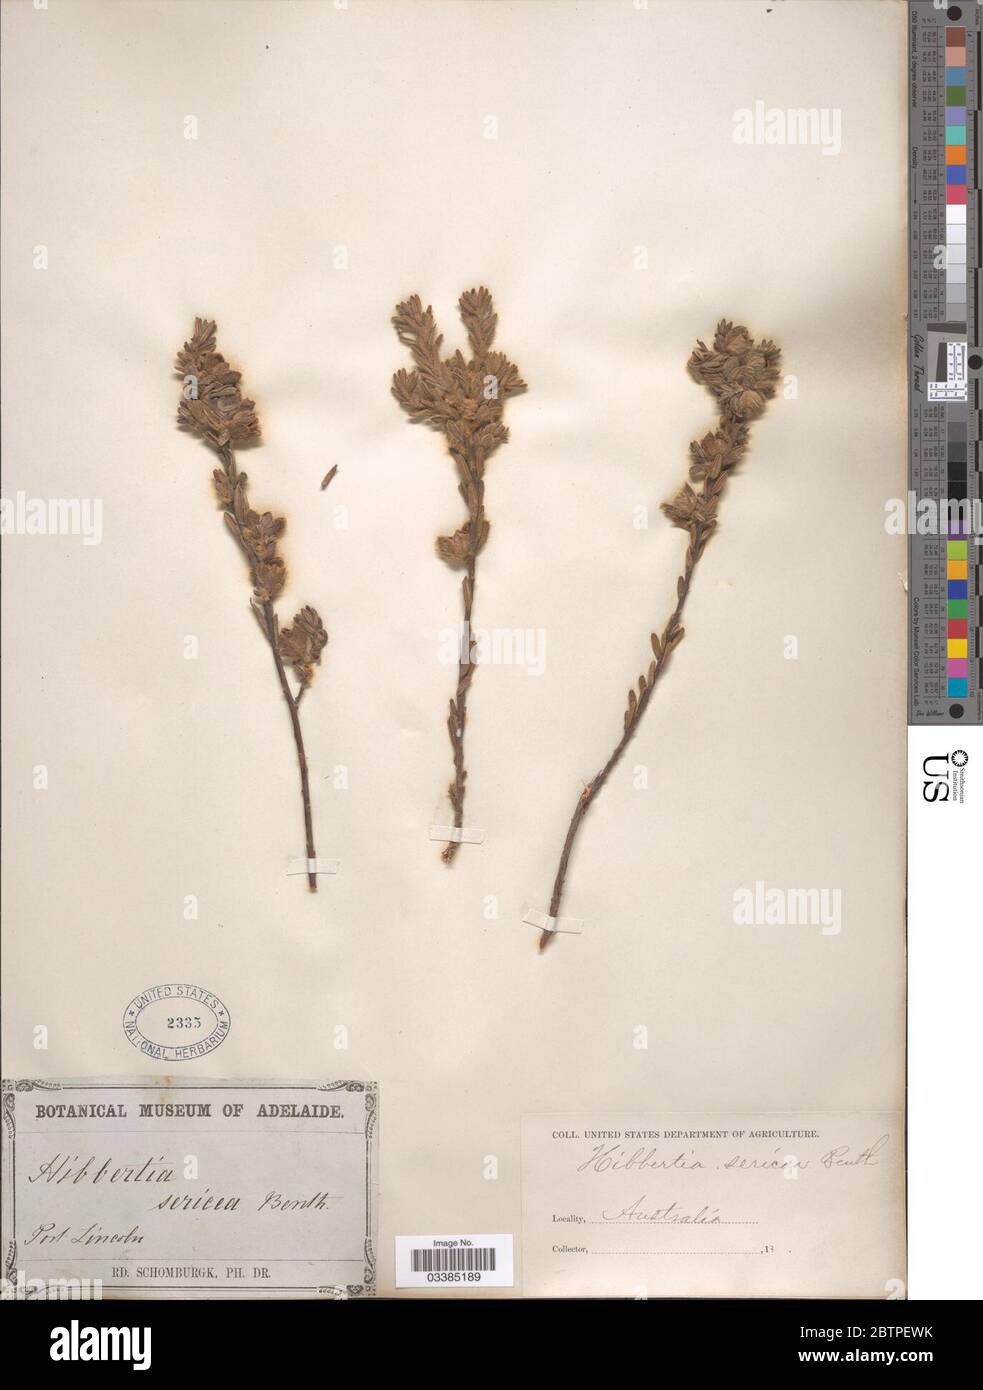 Hibbertia sericea Benth. Stock Photo